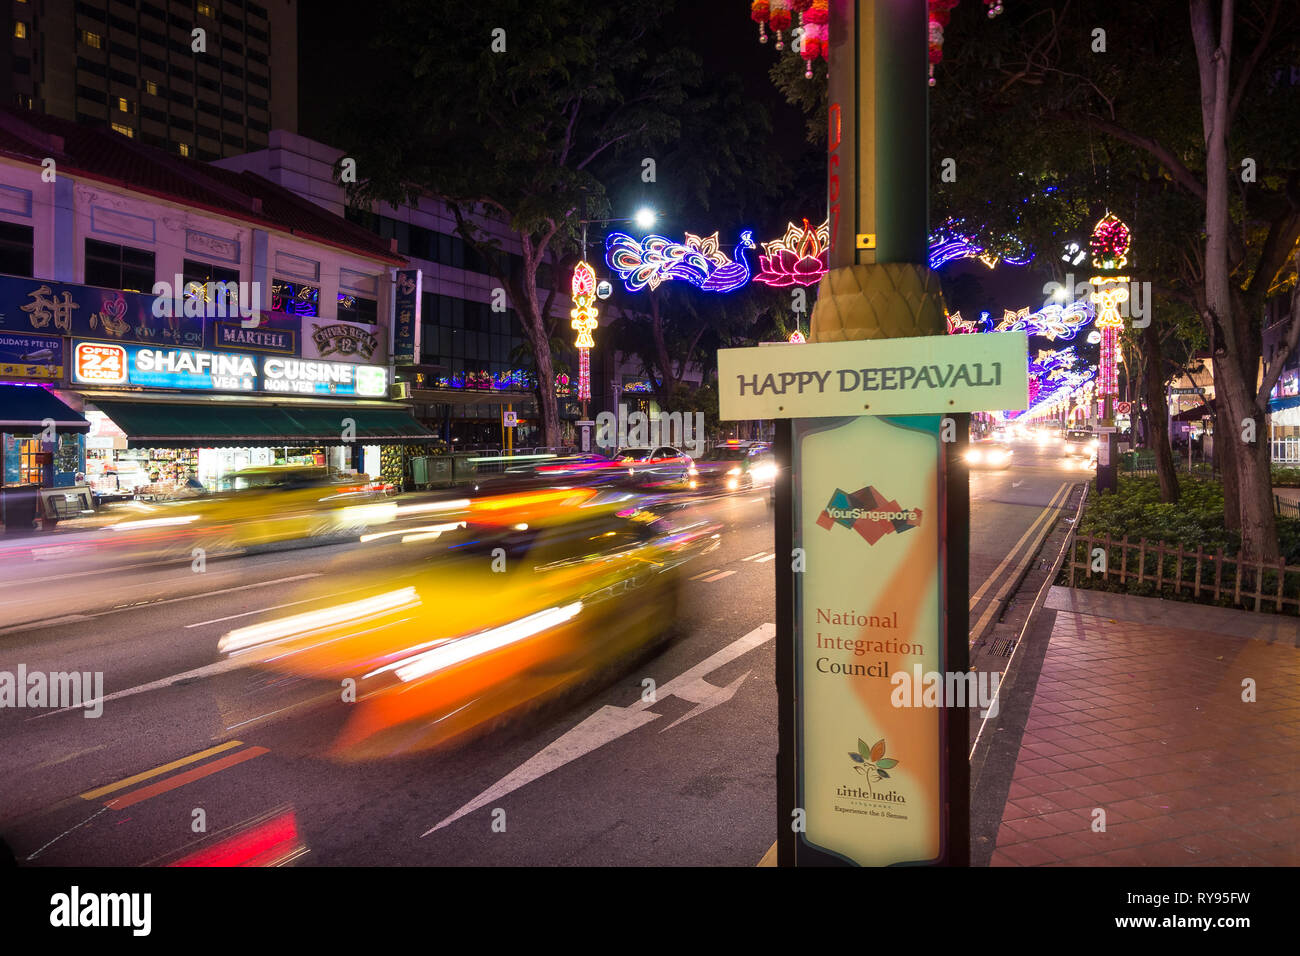 Singapour Little India, Singapour - le 29 octobre 2016 : un panneau routier indique 'Happy Deepavali' pendant le festival dans le pays haut en couleurs, les Indiens Banque D'Images